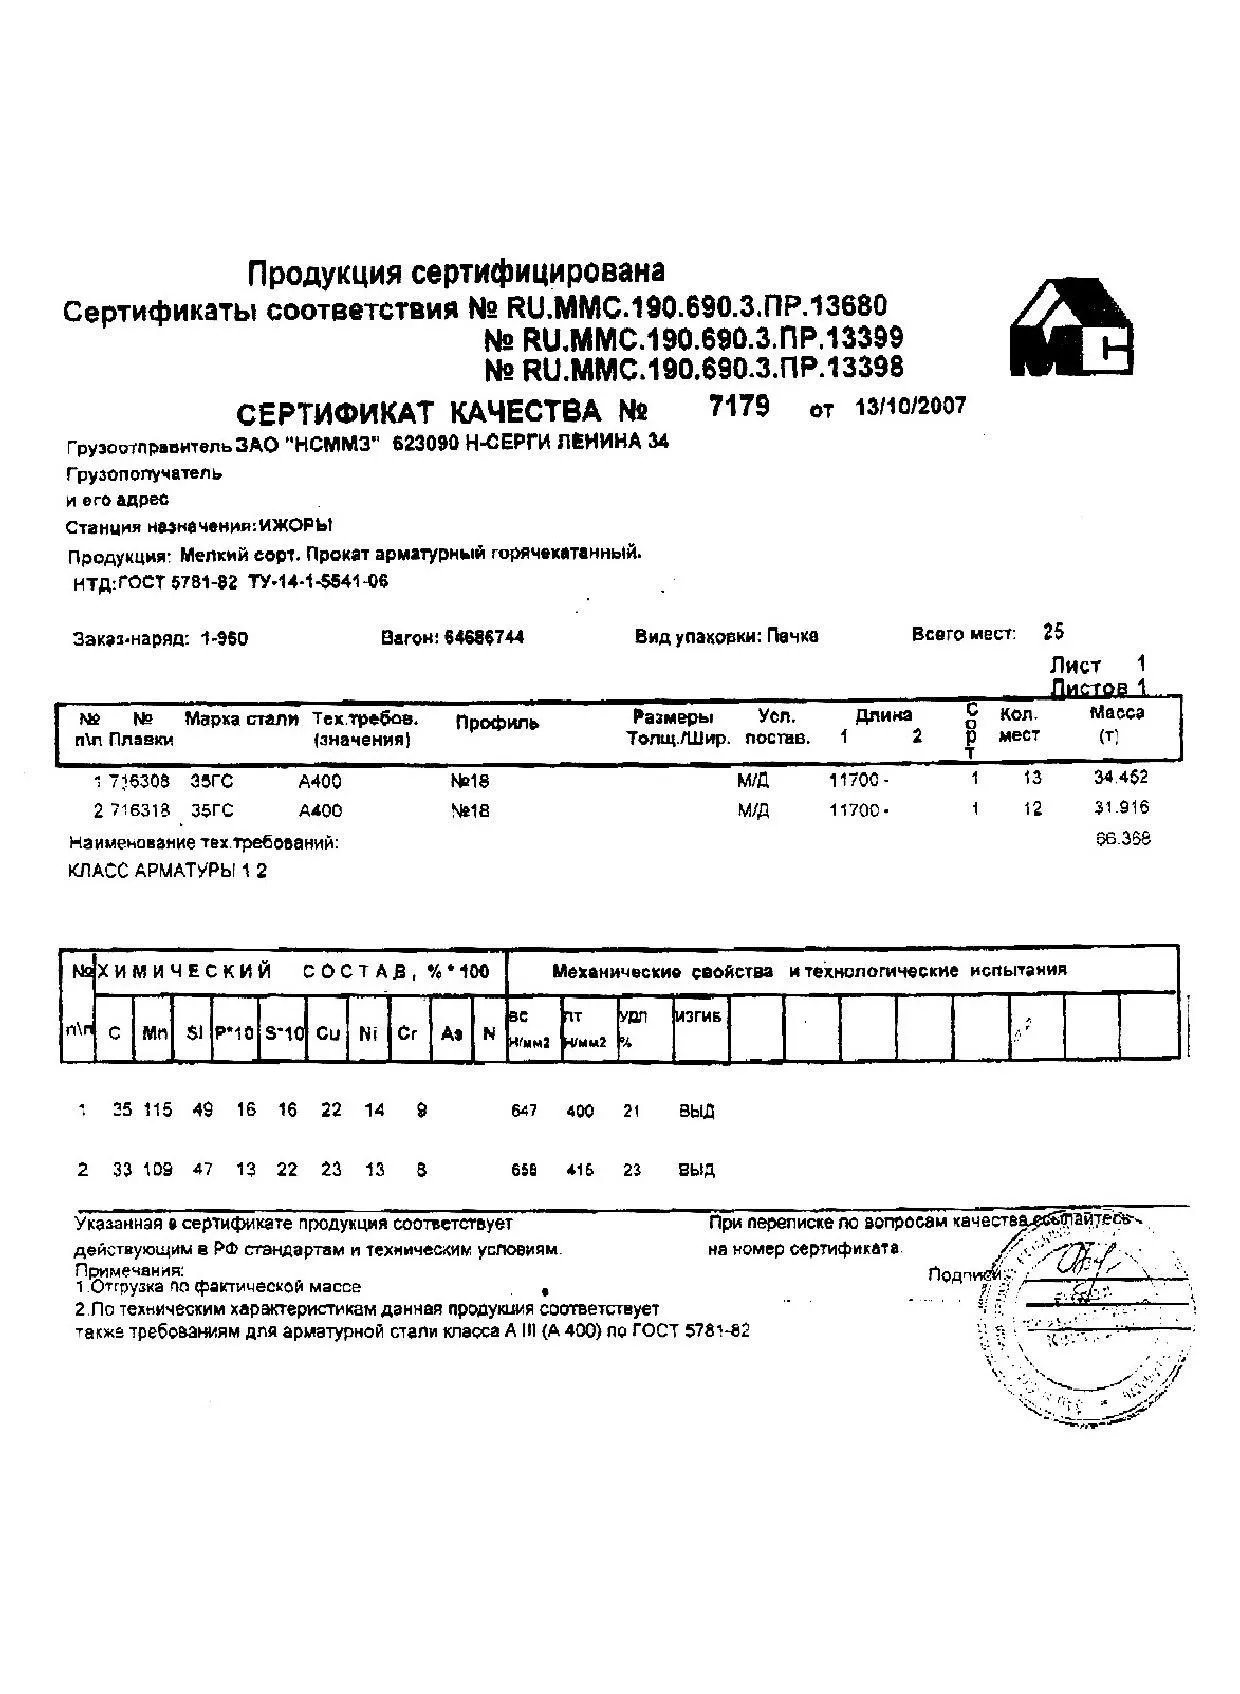 Сертификат на арматуру 18 марки 35ГС от 2007-10